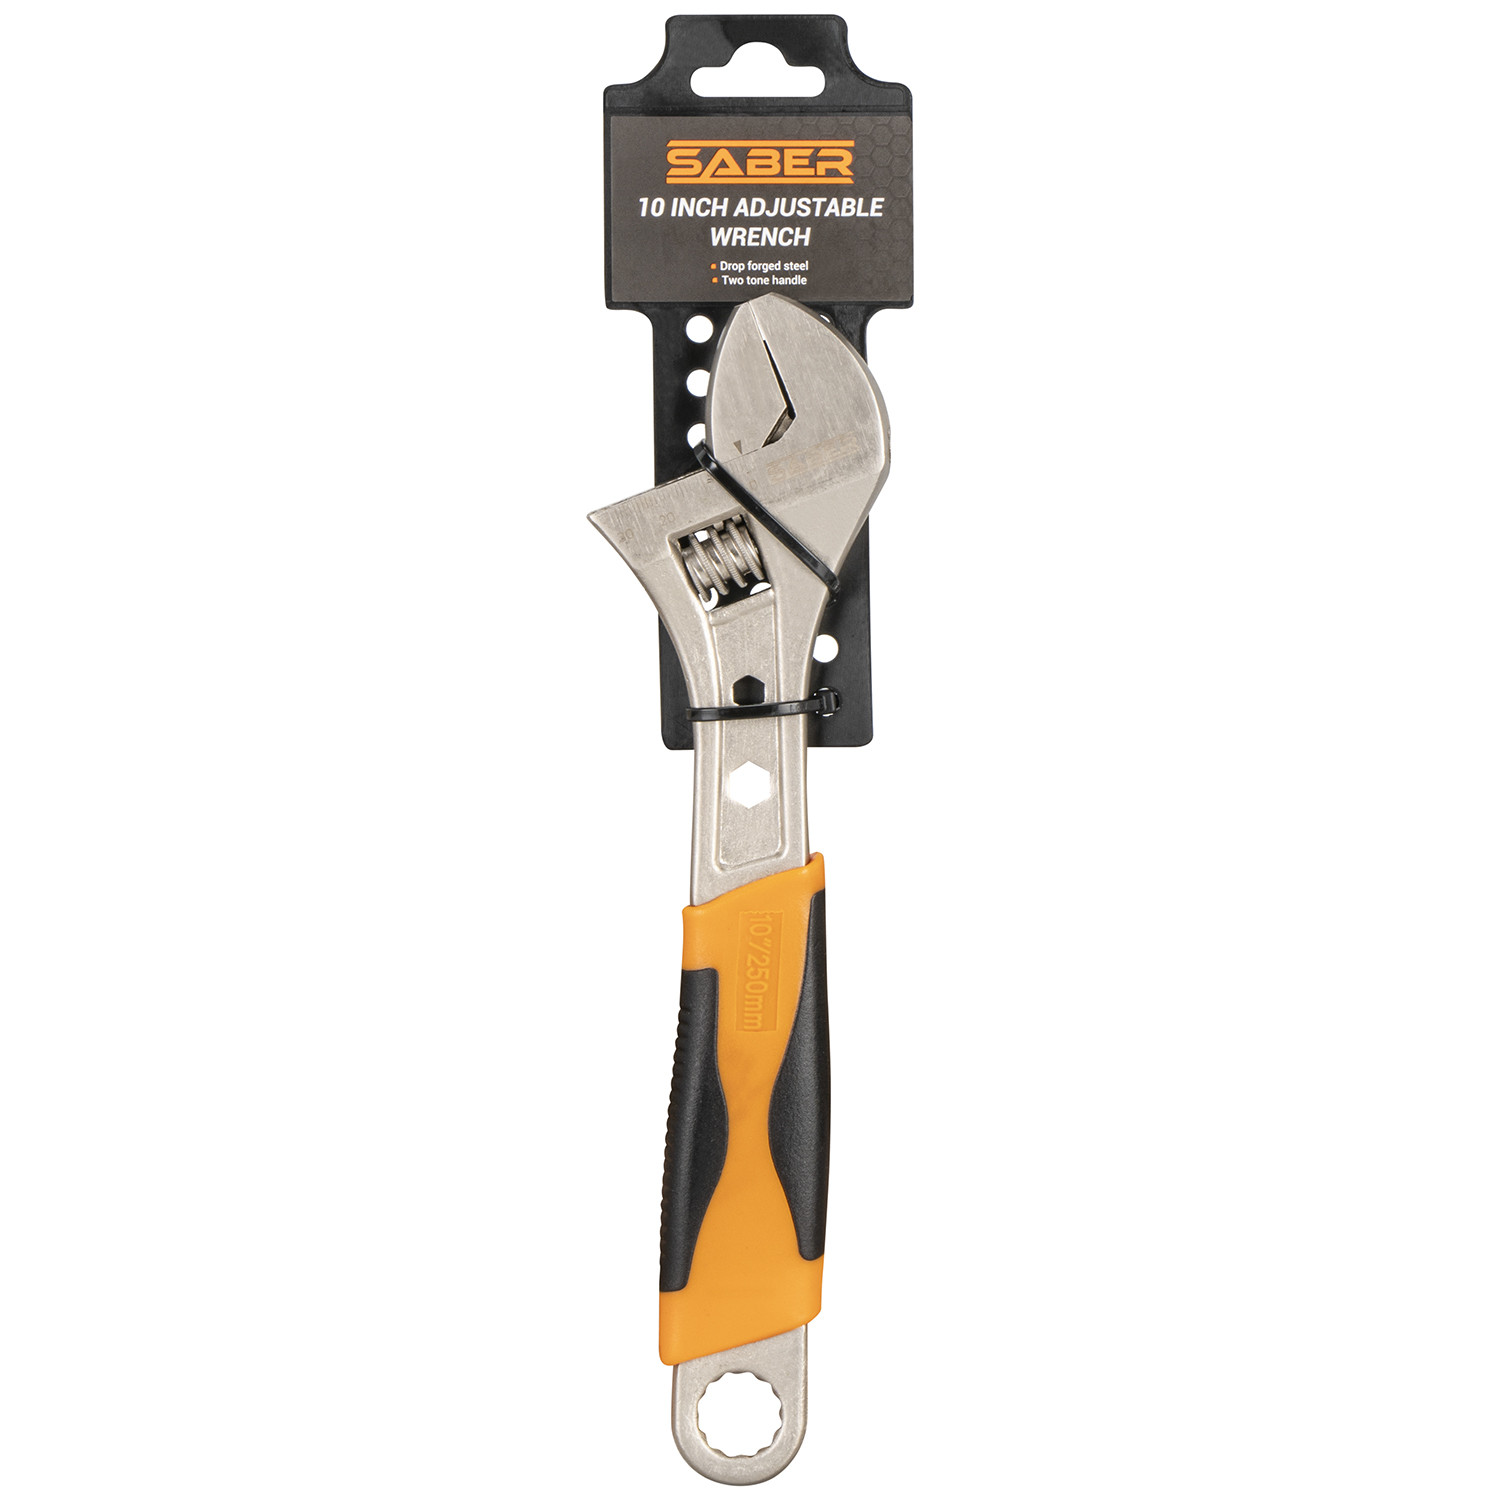 Saber Adjustable Steel Wrench 10 inch Image